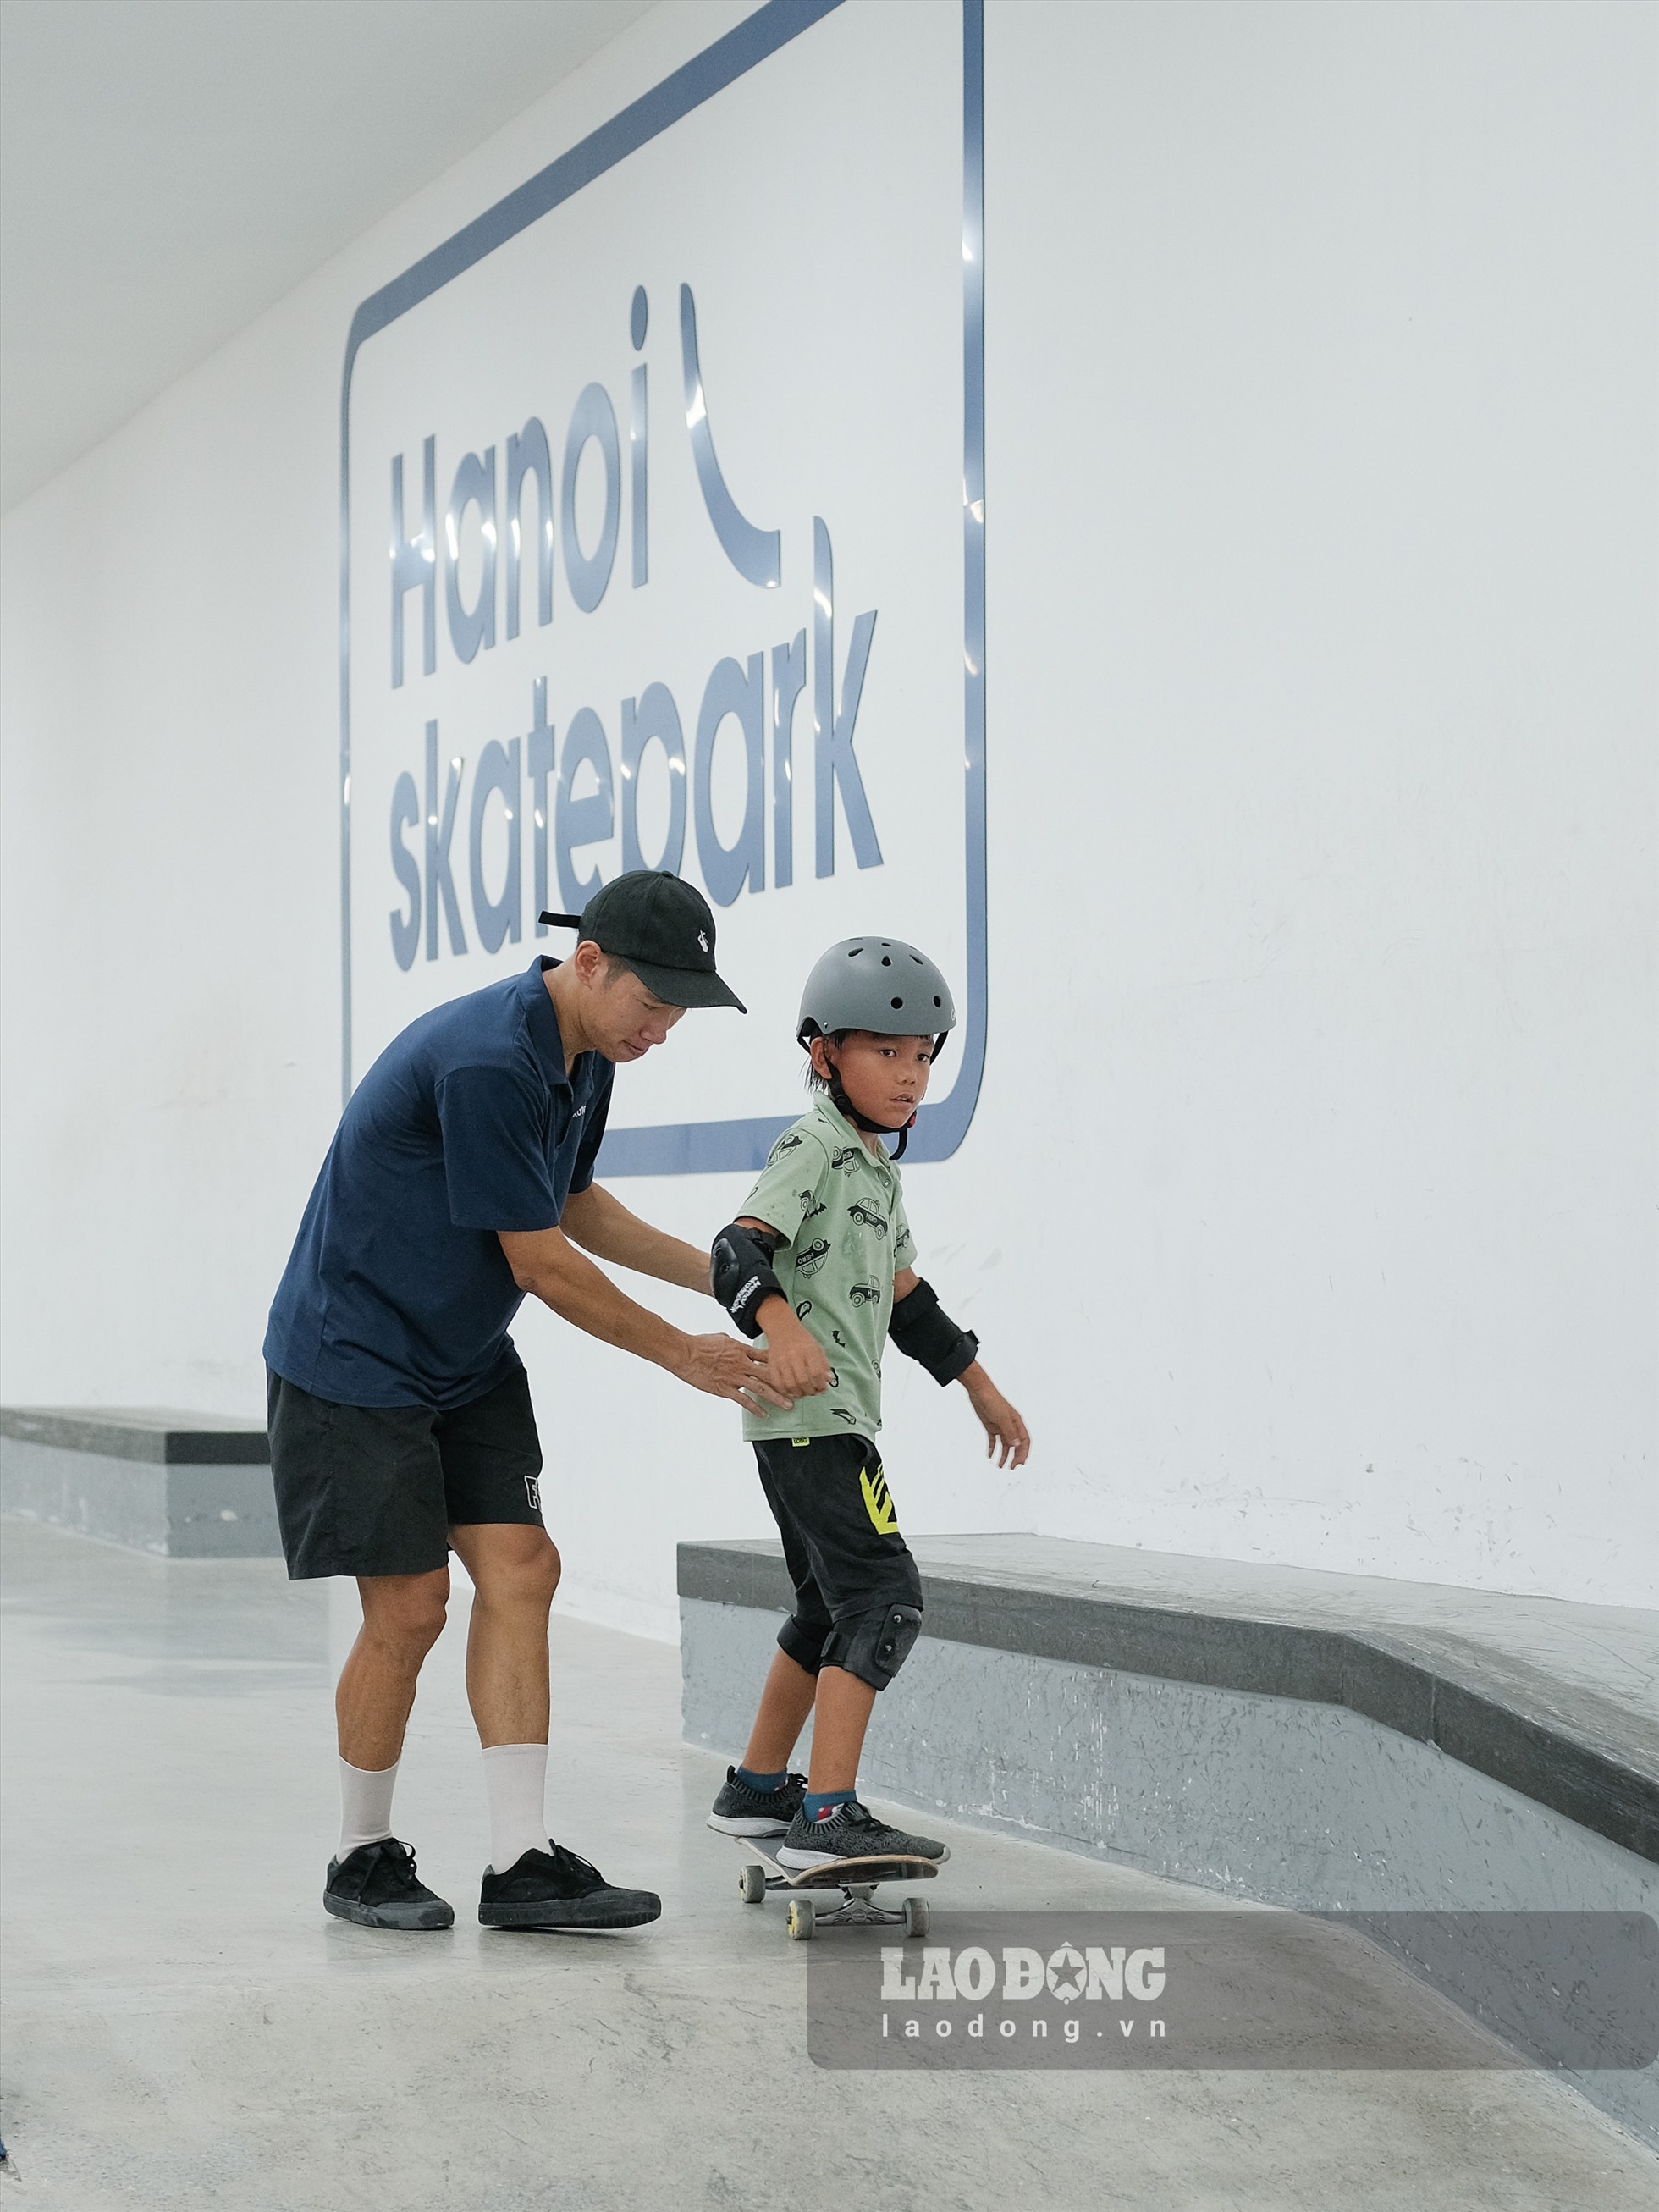 Anh Hải Anh - Đồng sáng lập của Hanoi Skatepark chia sẻ trước đây mọi người chỉ có thể trượt ván tại các công viên ngoài trời, yếu tố thời tiết, người đi lại và các phương tiện xung quanh mang lại nhiều rủi ro. Vì vậy, sân trượt này nhằm tạo một sân chơi an toàn cho giới trẻ, chuyên nghiệp hoá môn thể thao đường phố này ở Việt Nam.